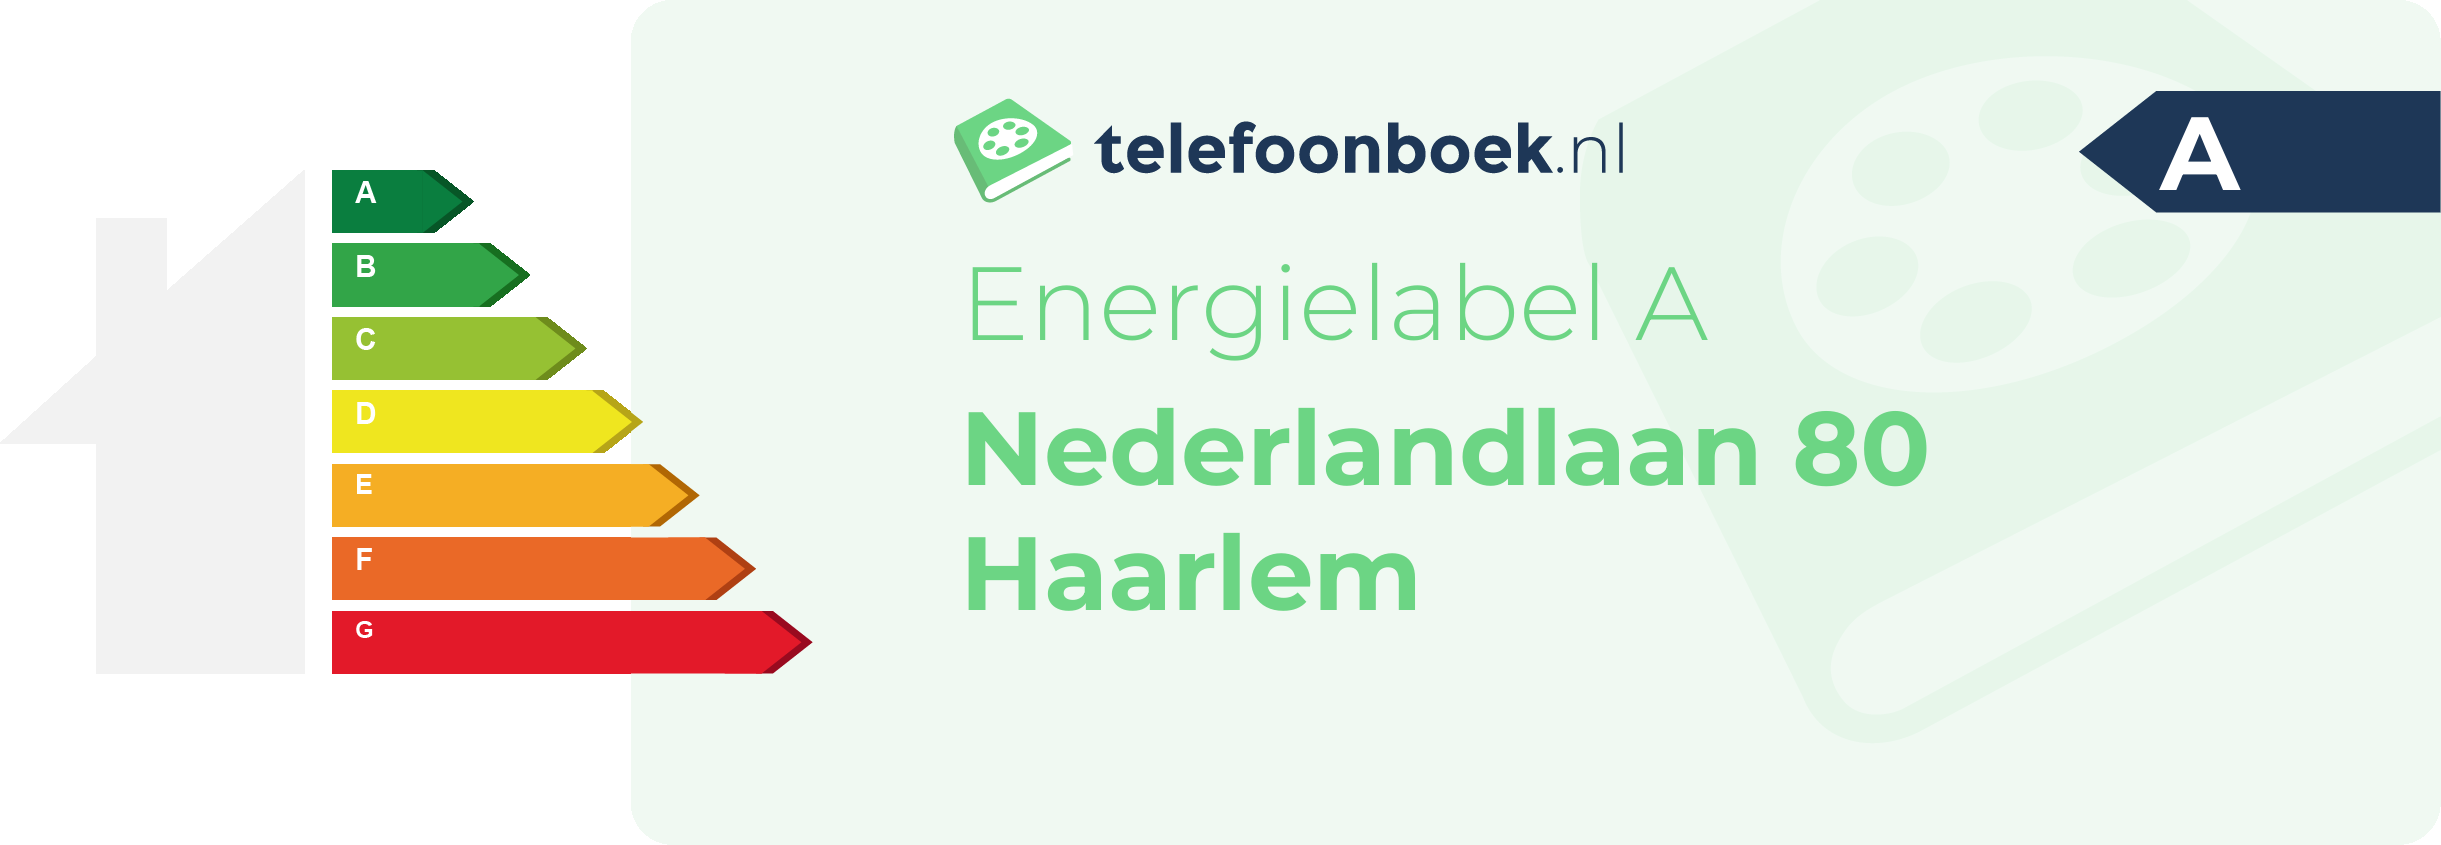 Energielabel Nederlandlaan 80 Haarlem